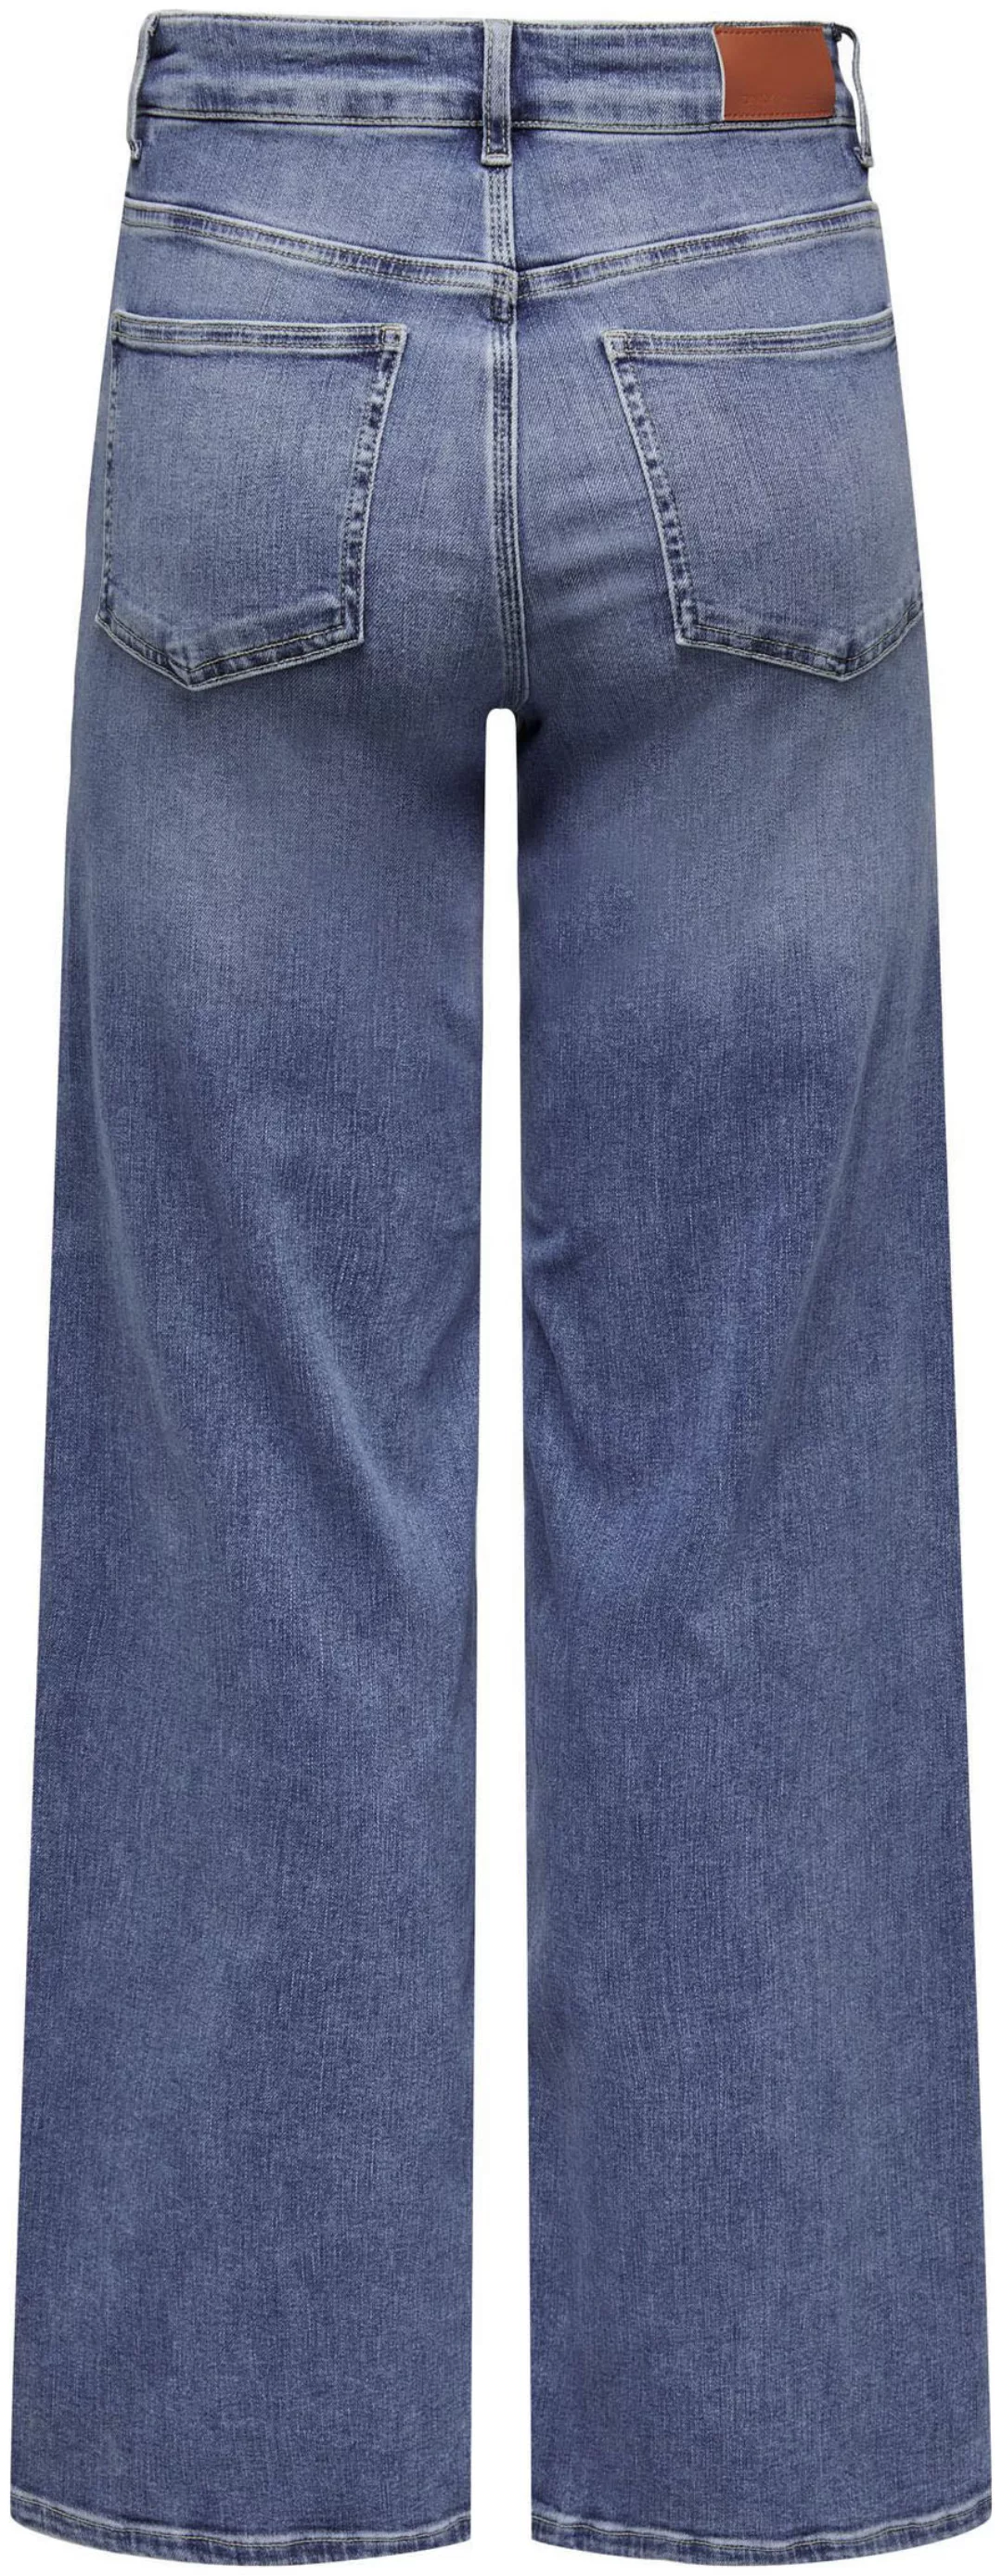 Only Damen Jeans ONLMADISON BLUSH HW WIDE Blau - Medium Blue Denim günstig online kaufen